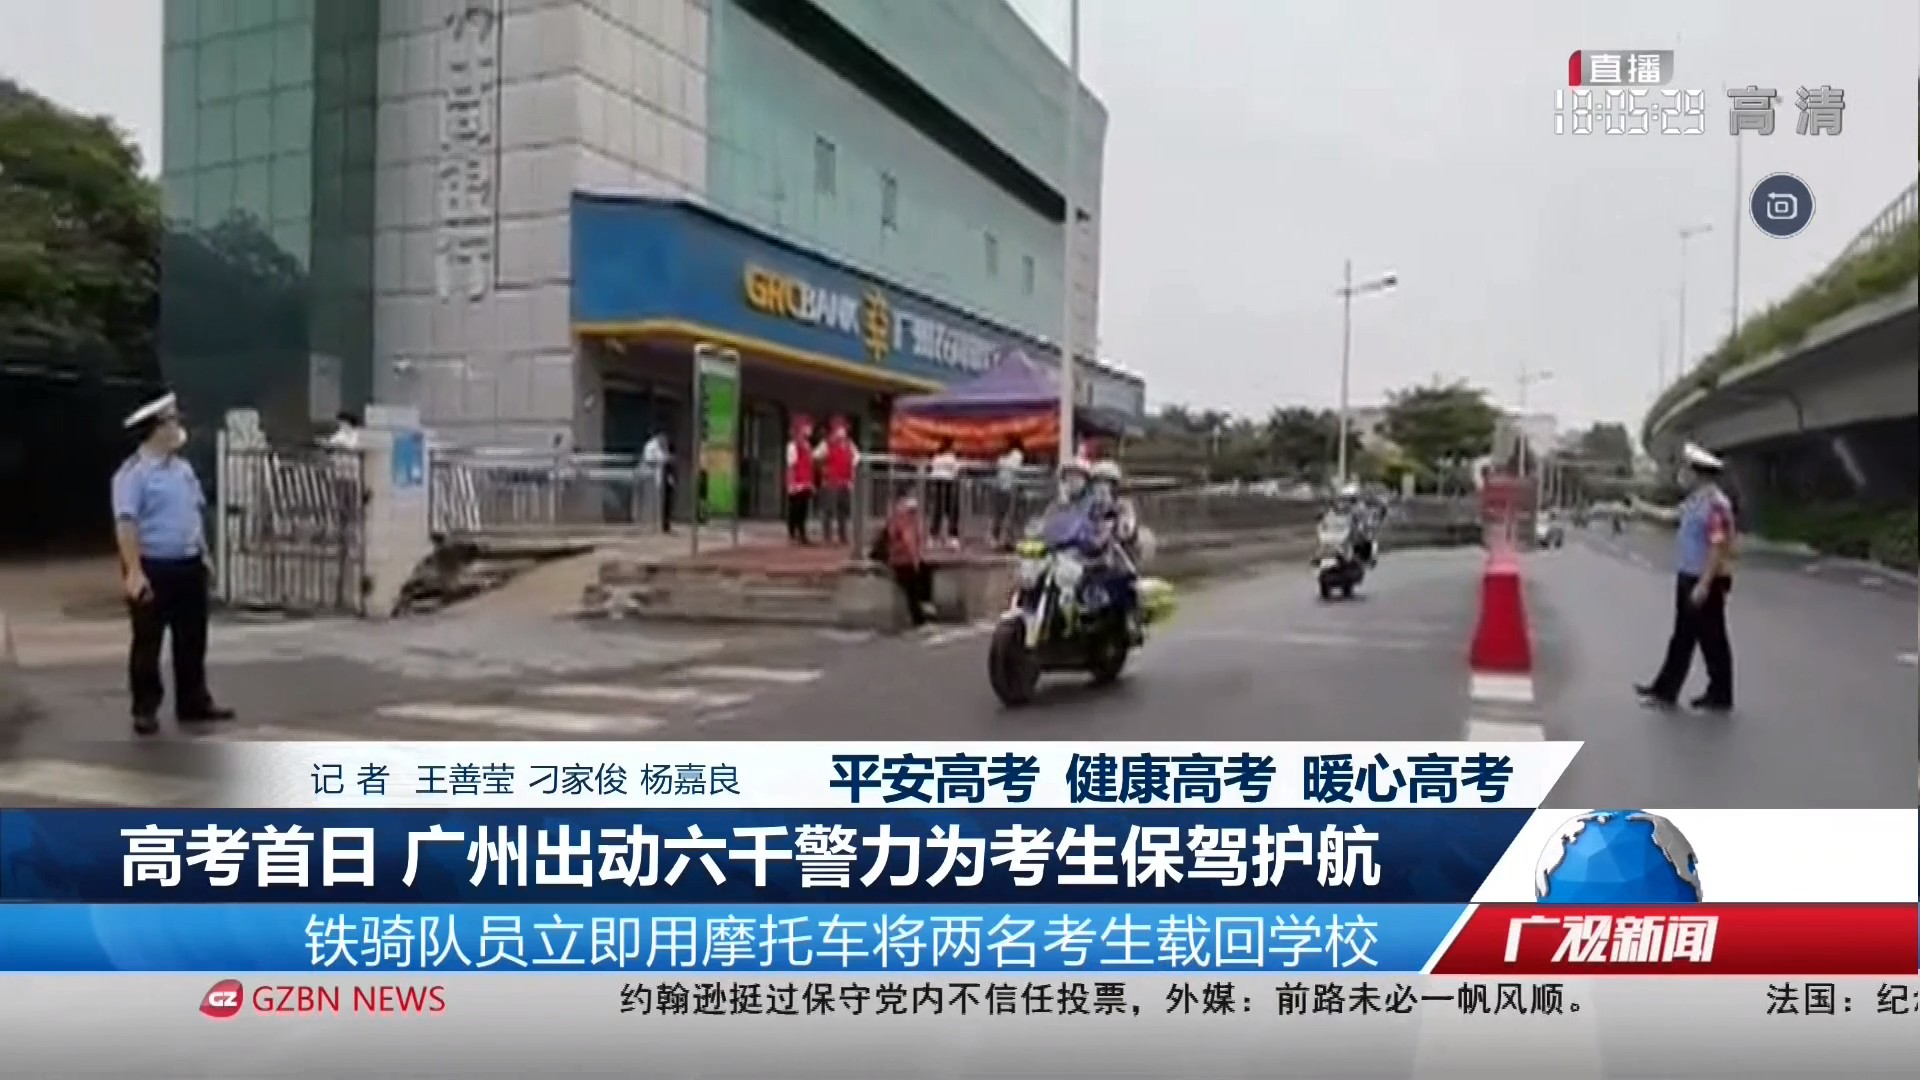 20220607广州台综合频道 广视新闻 高考首日 广州出动六千警力为考生保驾护航